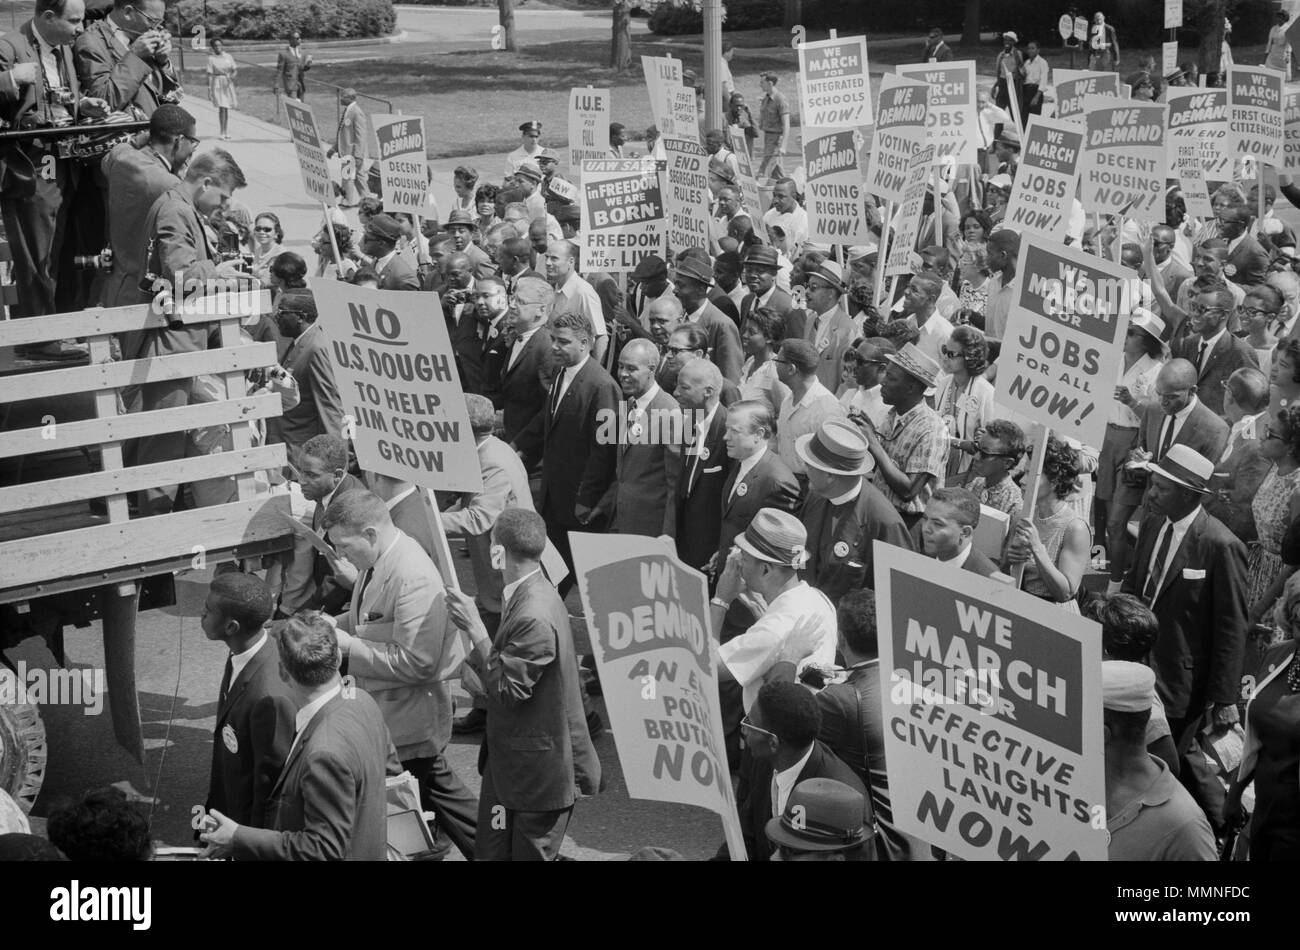 Fotografía que muestra marchando, incluidos los líderes de los derechos civiles Martin Luther King, Jr., rodeado por multitudes que llevaban carteles. Leffler, Warren K., fotógrafo el día 28 de agosto de 1963. Foto de stock